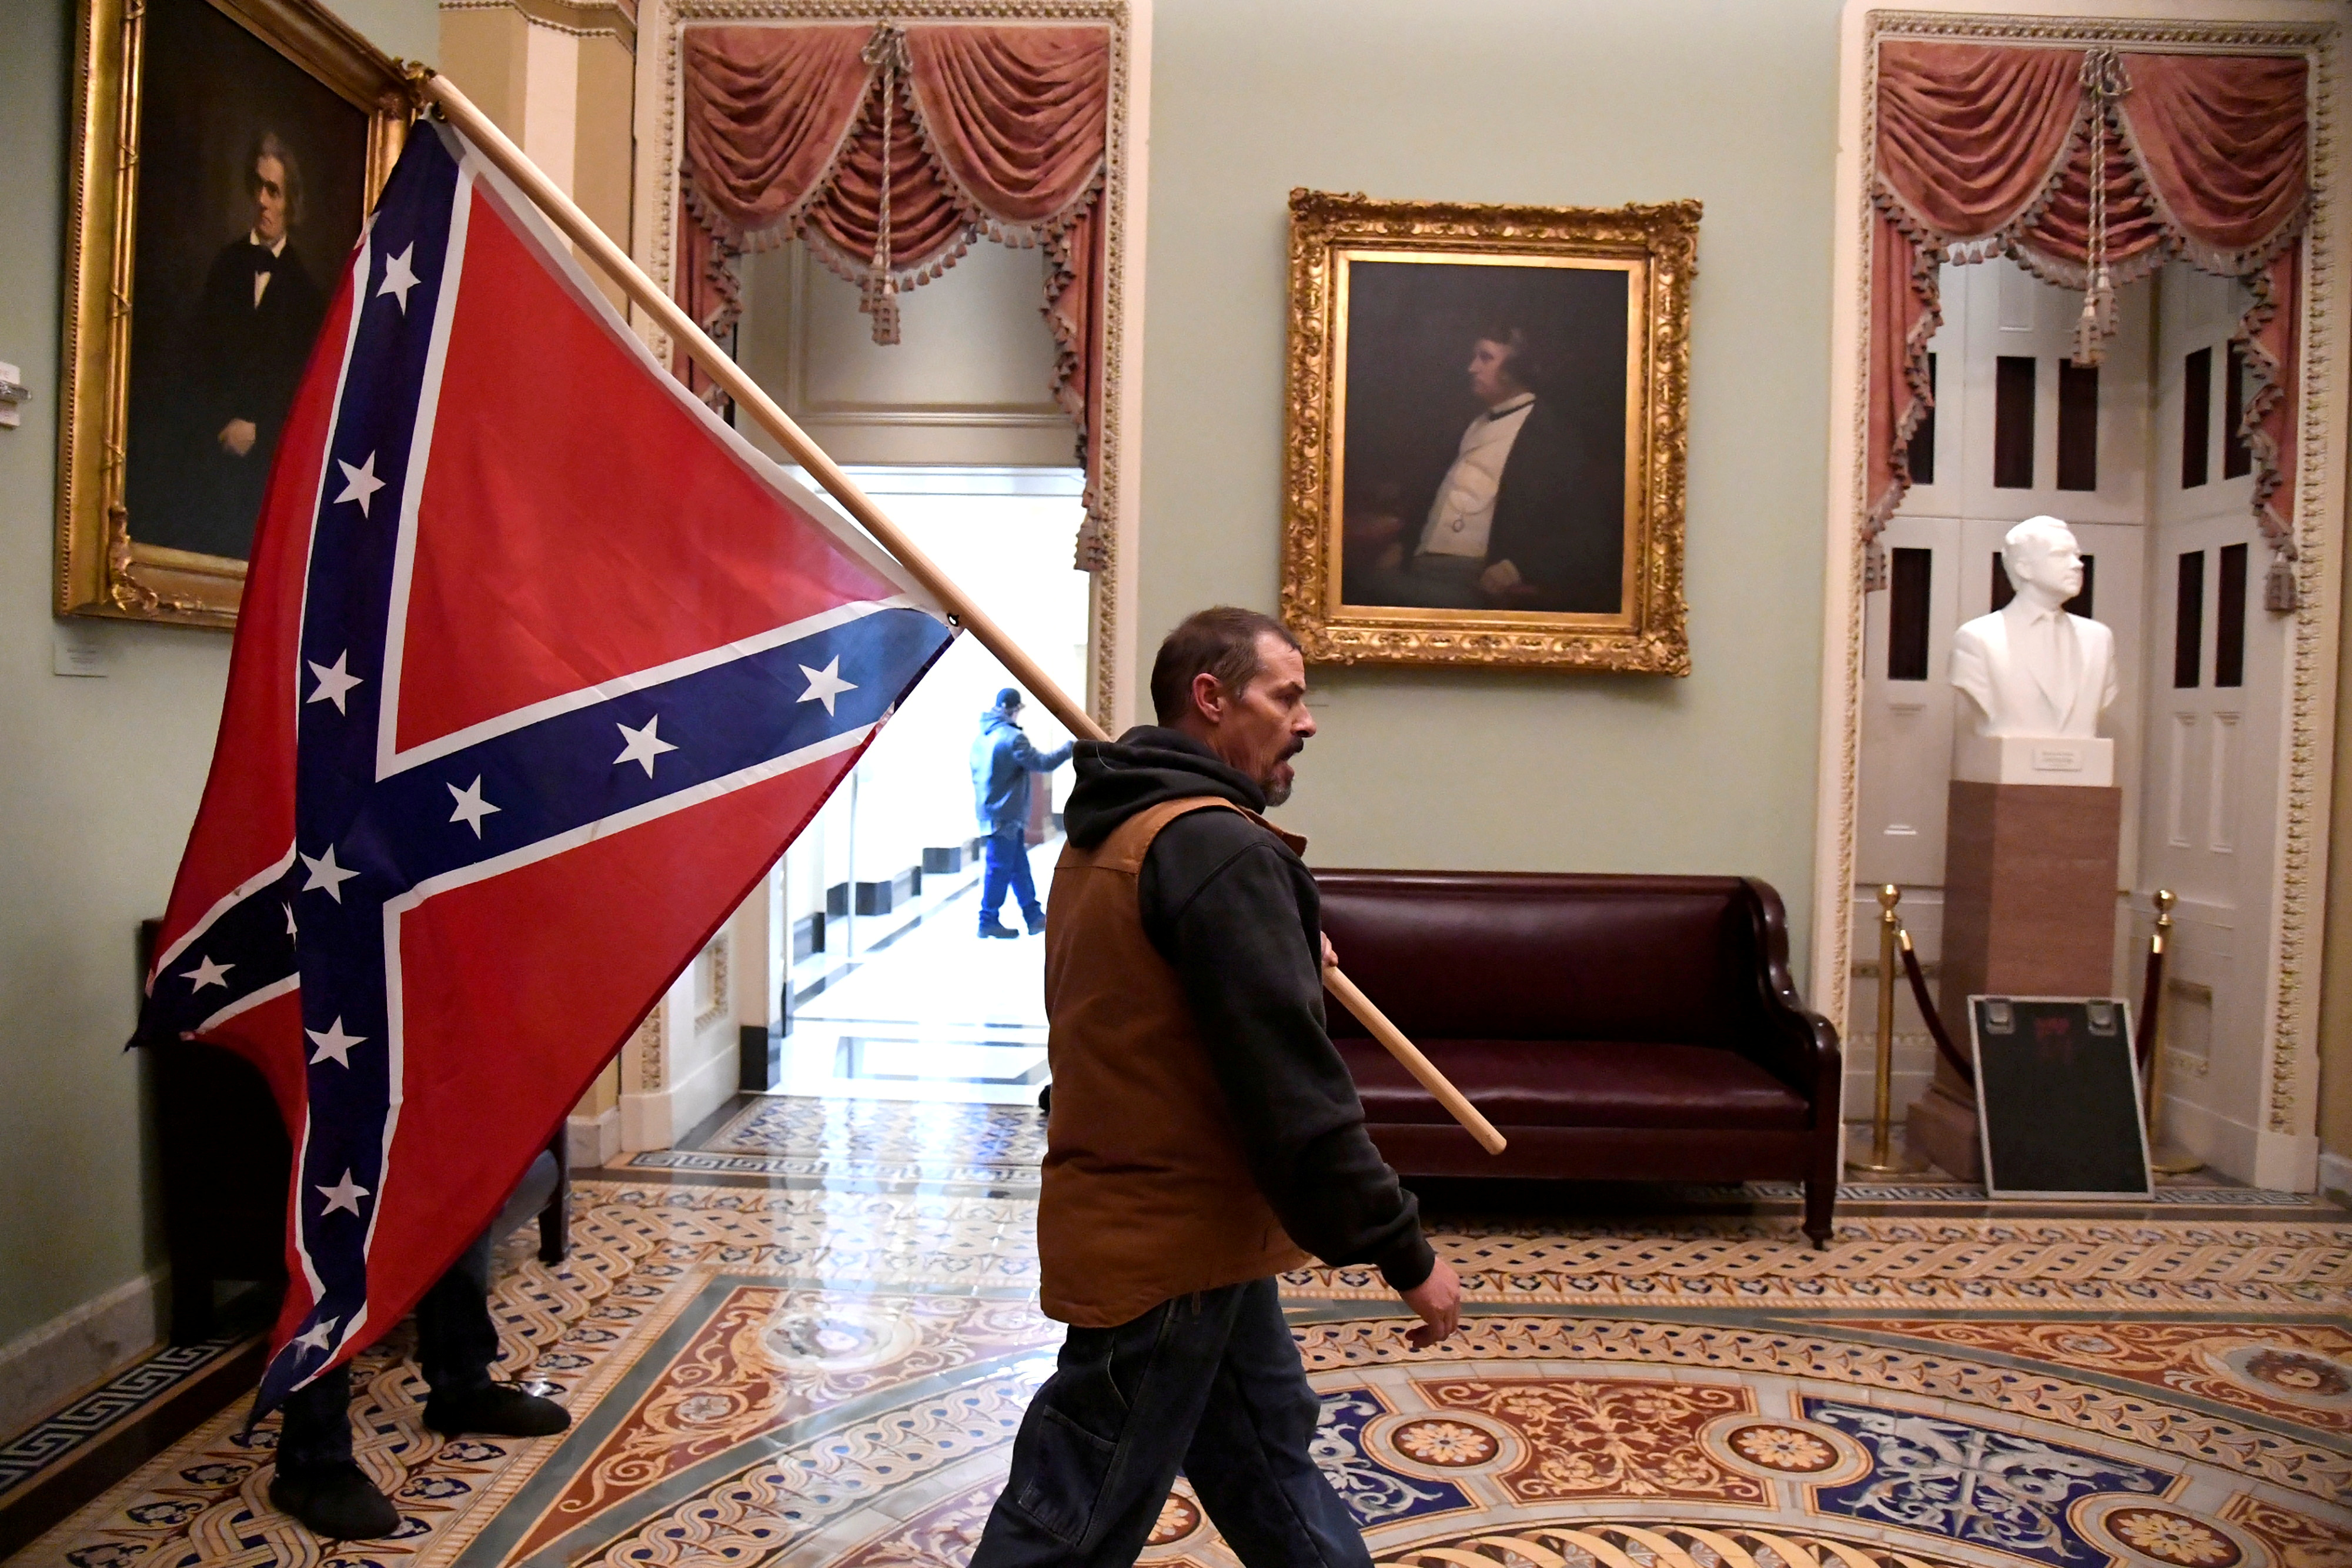 Un activista con la bandera confederada camina por los pasillos internos del Capitolio. El plan era impedir a cualquier precio que Joe Biden sea certificado como nuevo presidente norteamericano. No lo lograron y el Capitolio impuso su legalidad (Reuters)